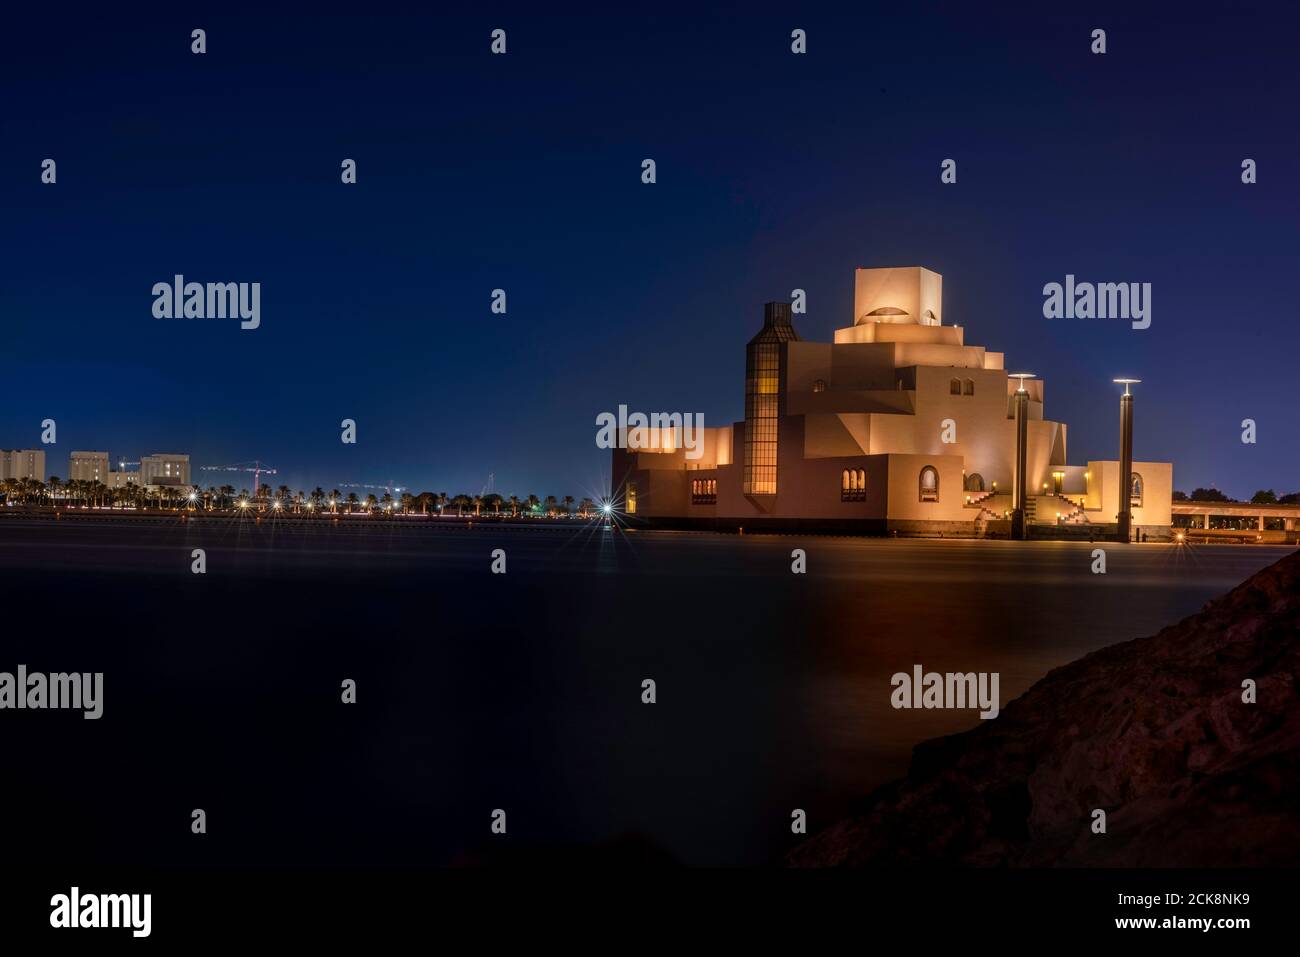 Doha, Katar - 26. August 2020: Moderne arabische Architektur des Museums für Islamische Kunst in Doha, Katar, mit nächtlicher Skyline im Hintergrund Stockfoto